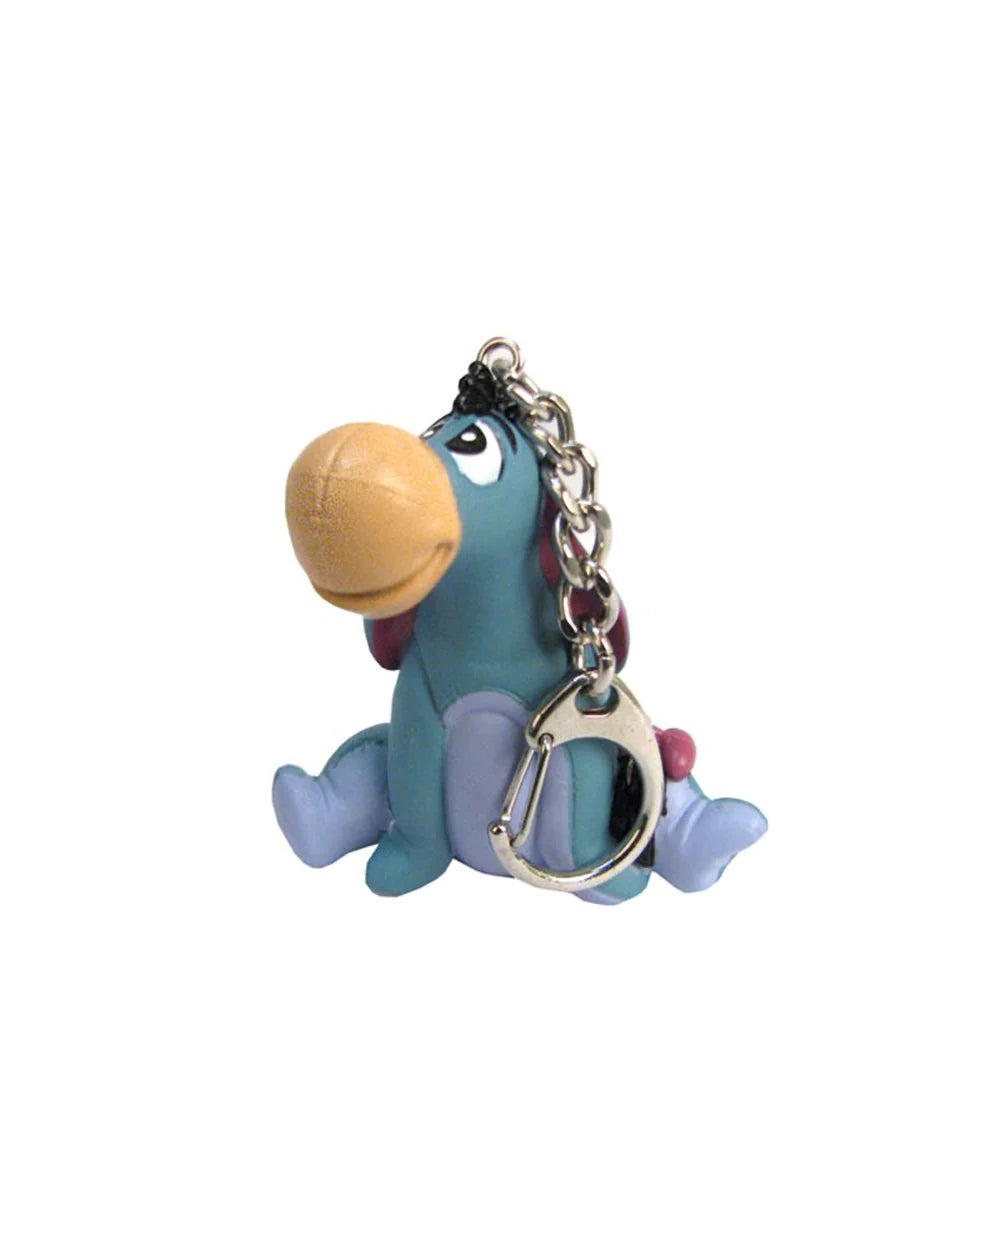 PVC Figural Key Ring - Disney Winnie The Pooh - Eeyore